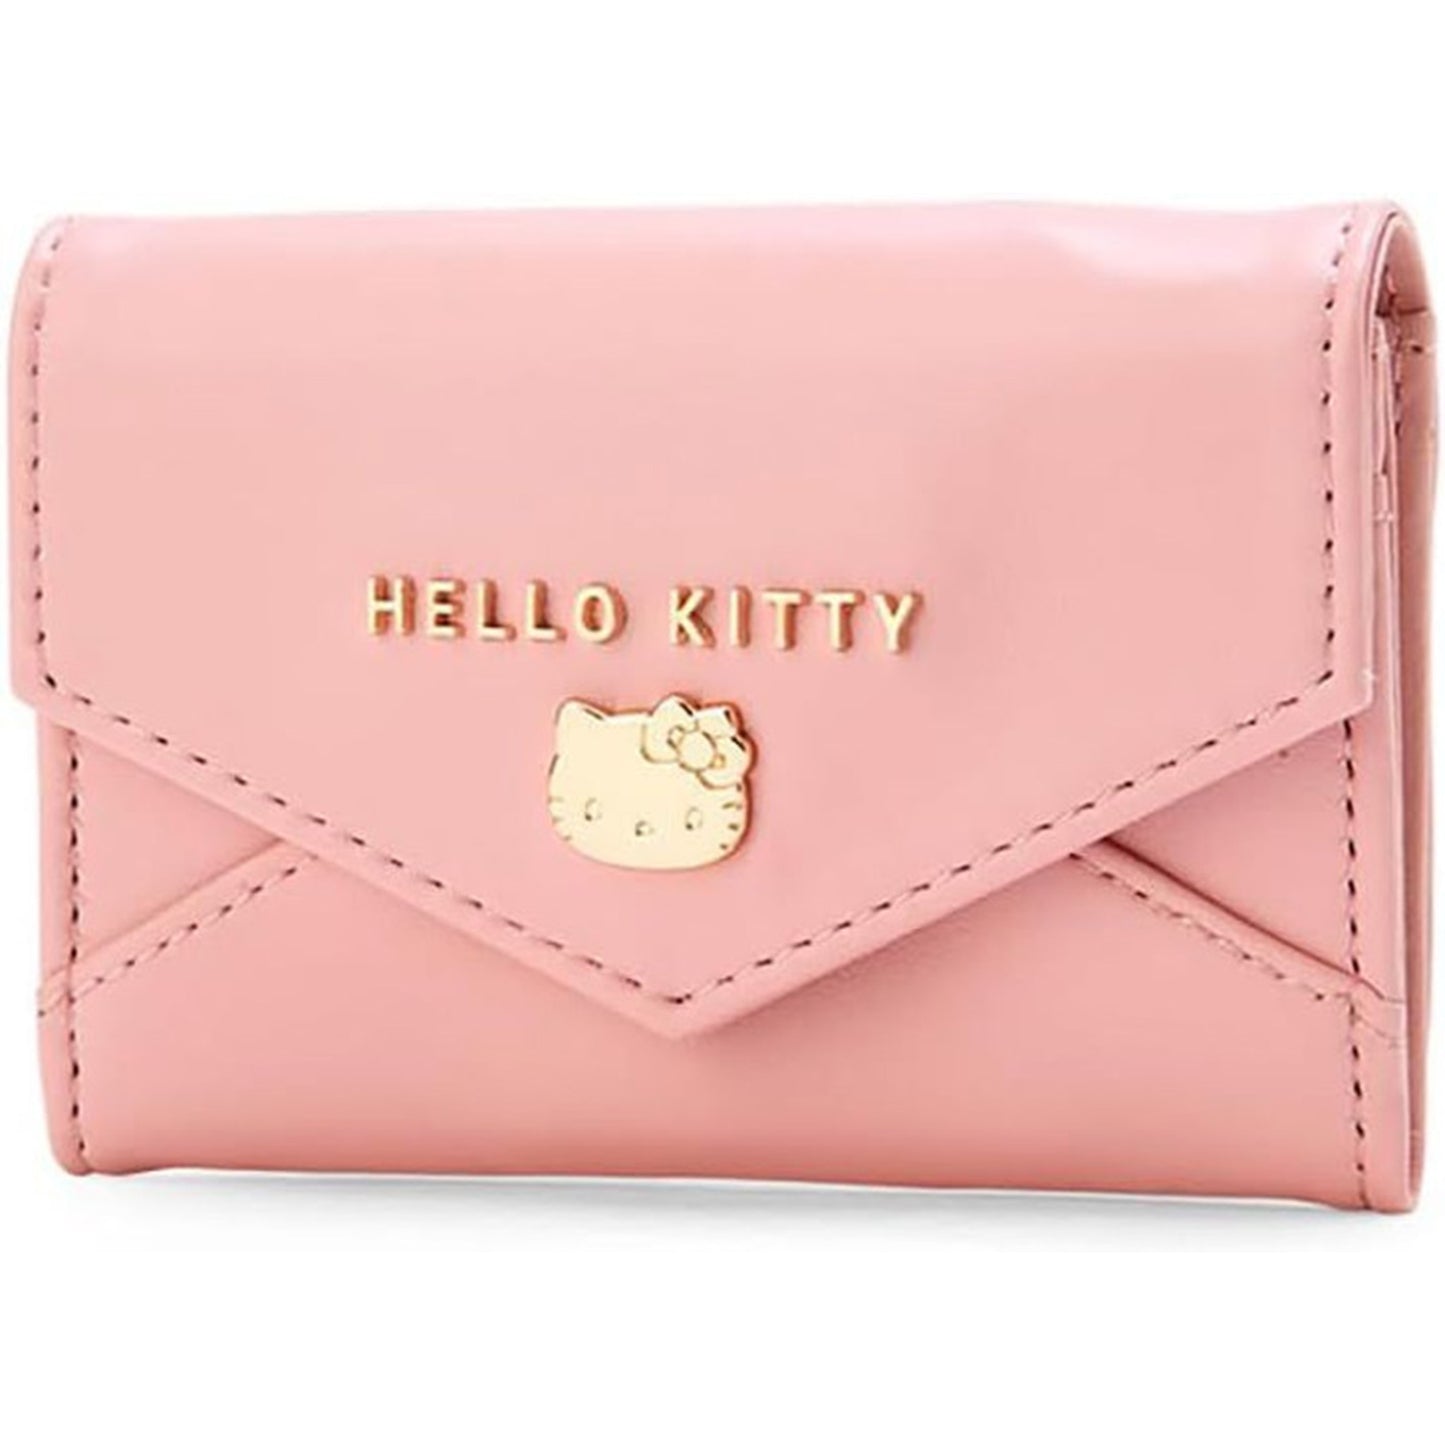 Hello Kitty Sanrio Card and Coin Purse